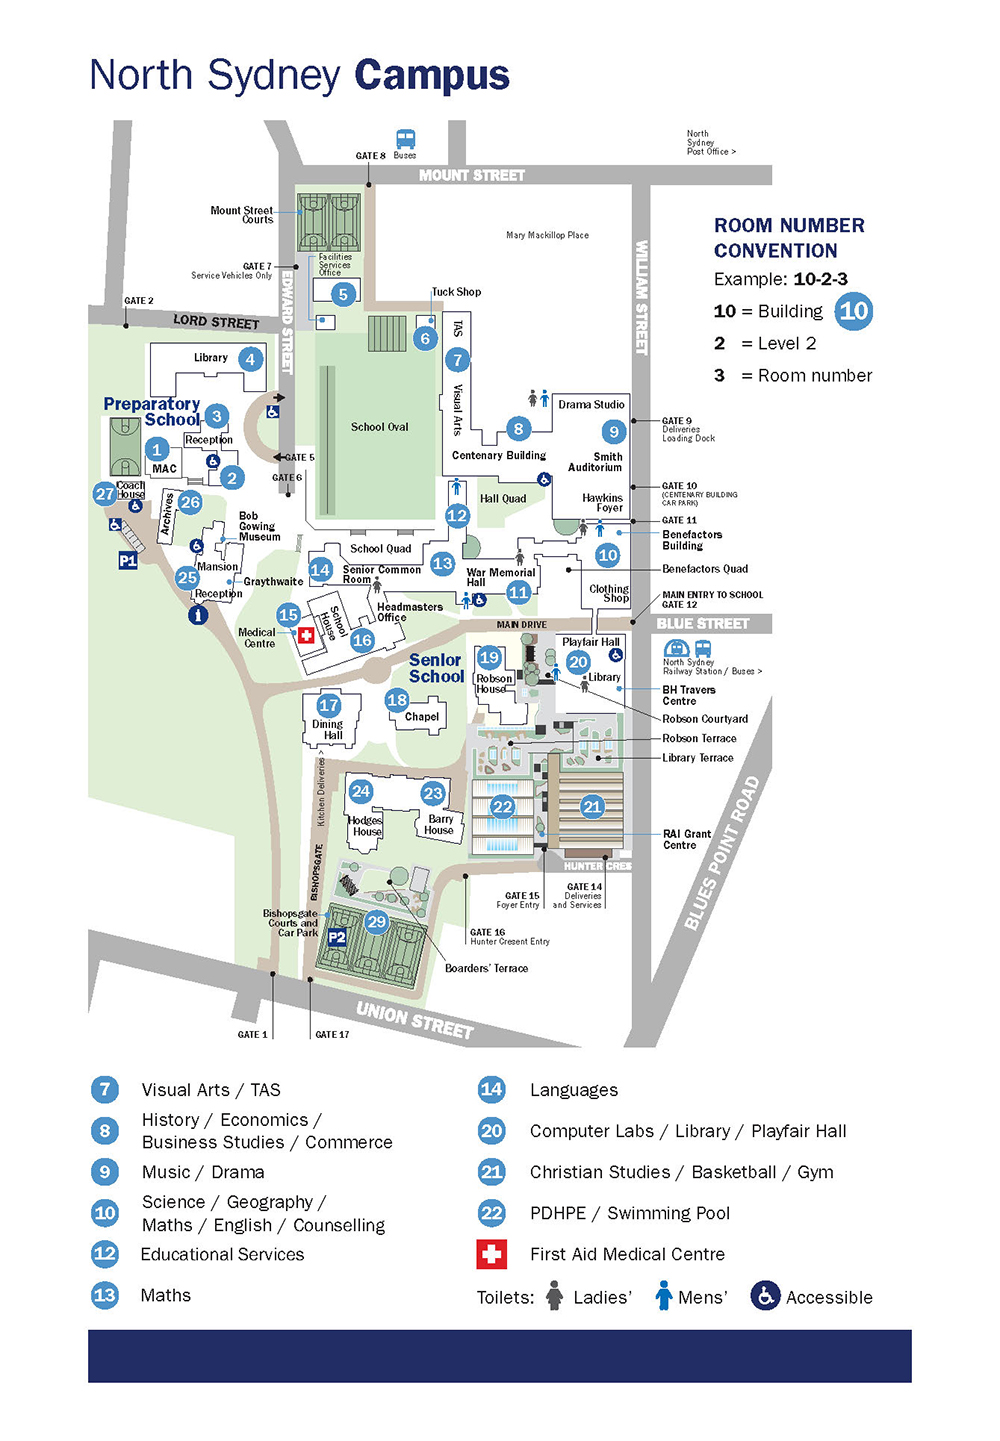 North Sydney Campus 2021